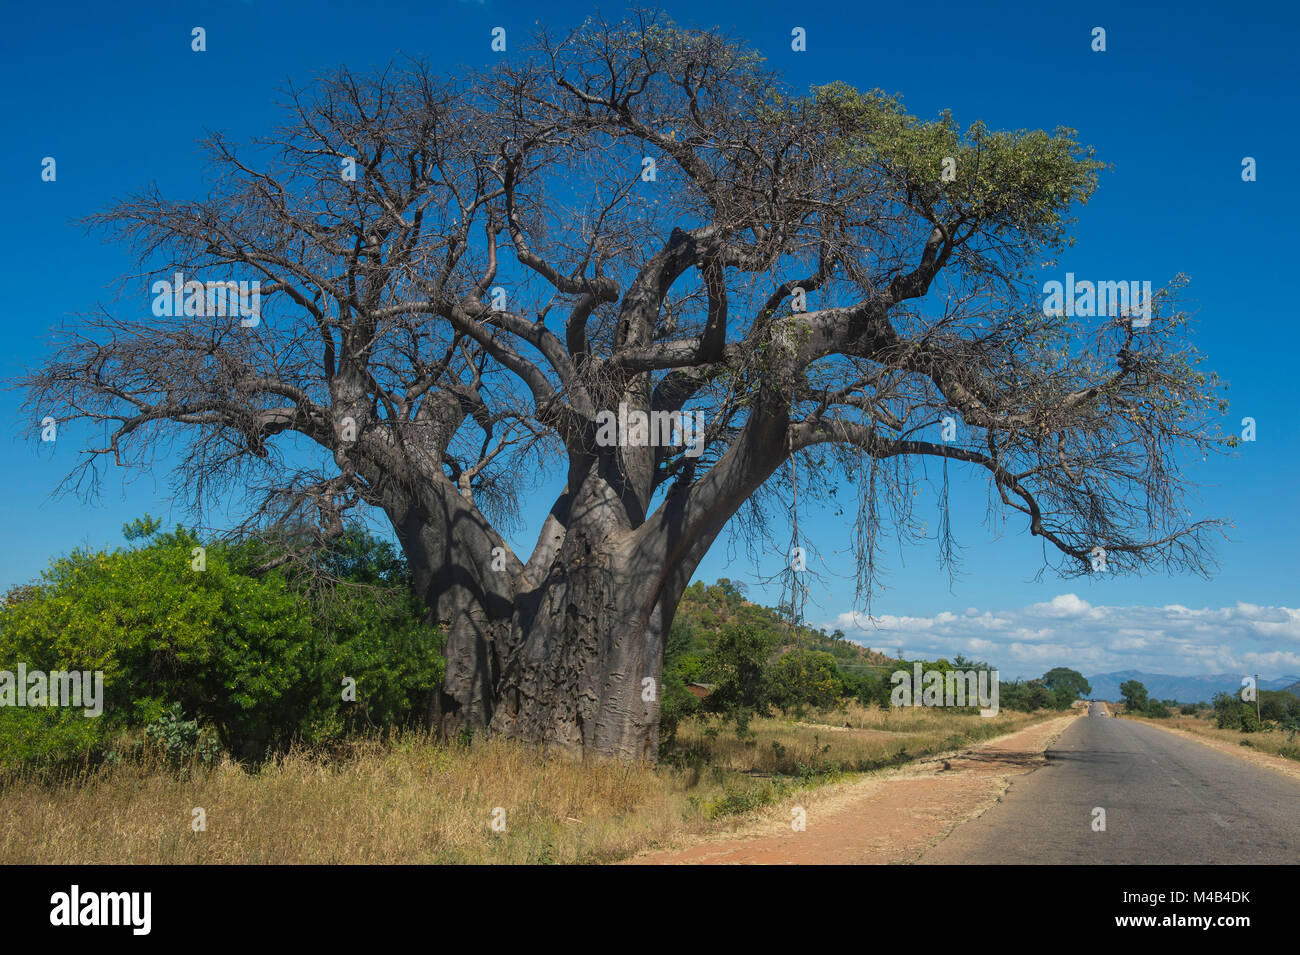 Giant baobab tree near Cape Maclear,Malawi,Africa Stock Photo